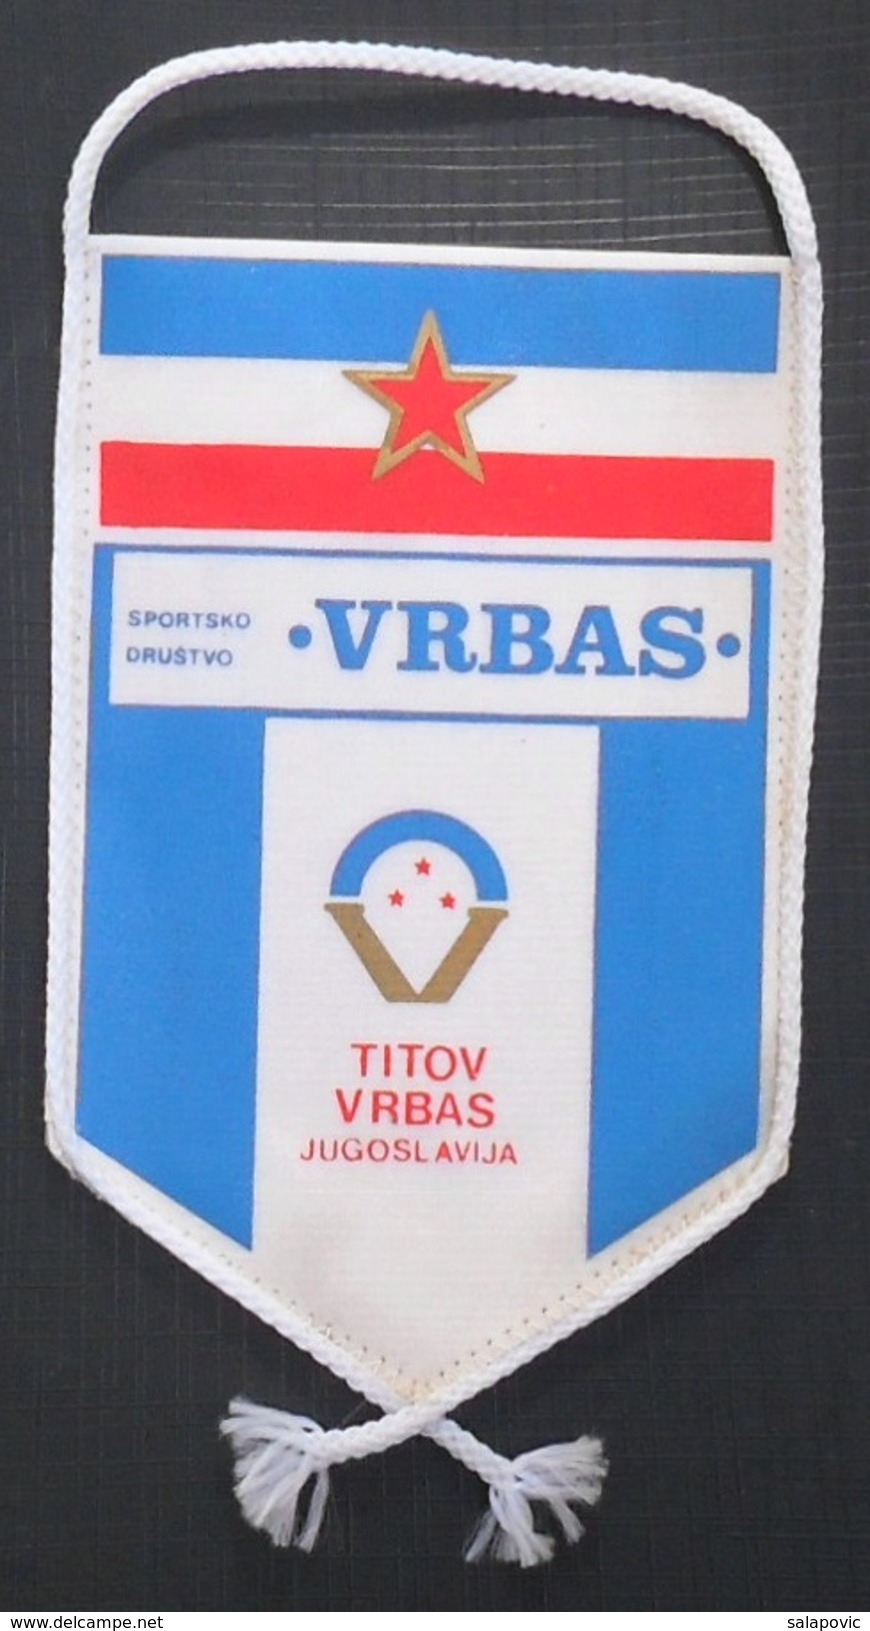 SD VRBAS, TITOV VRBAS, SERBIA FOOTBALL CLUB, CALCIO OLD PENNANT, SPORTS FLAG - Abbigliamento, Souvenirs & Varie